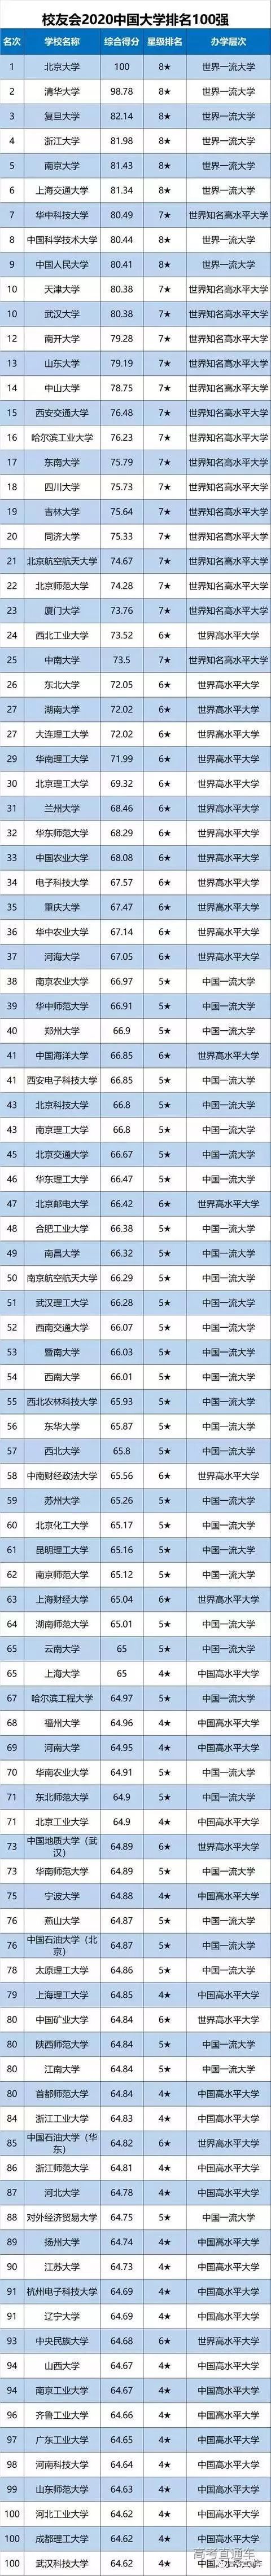 华南农业大学排名_非211类大学,华南农业大学排名前三,看看它2019年分数